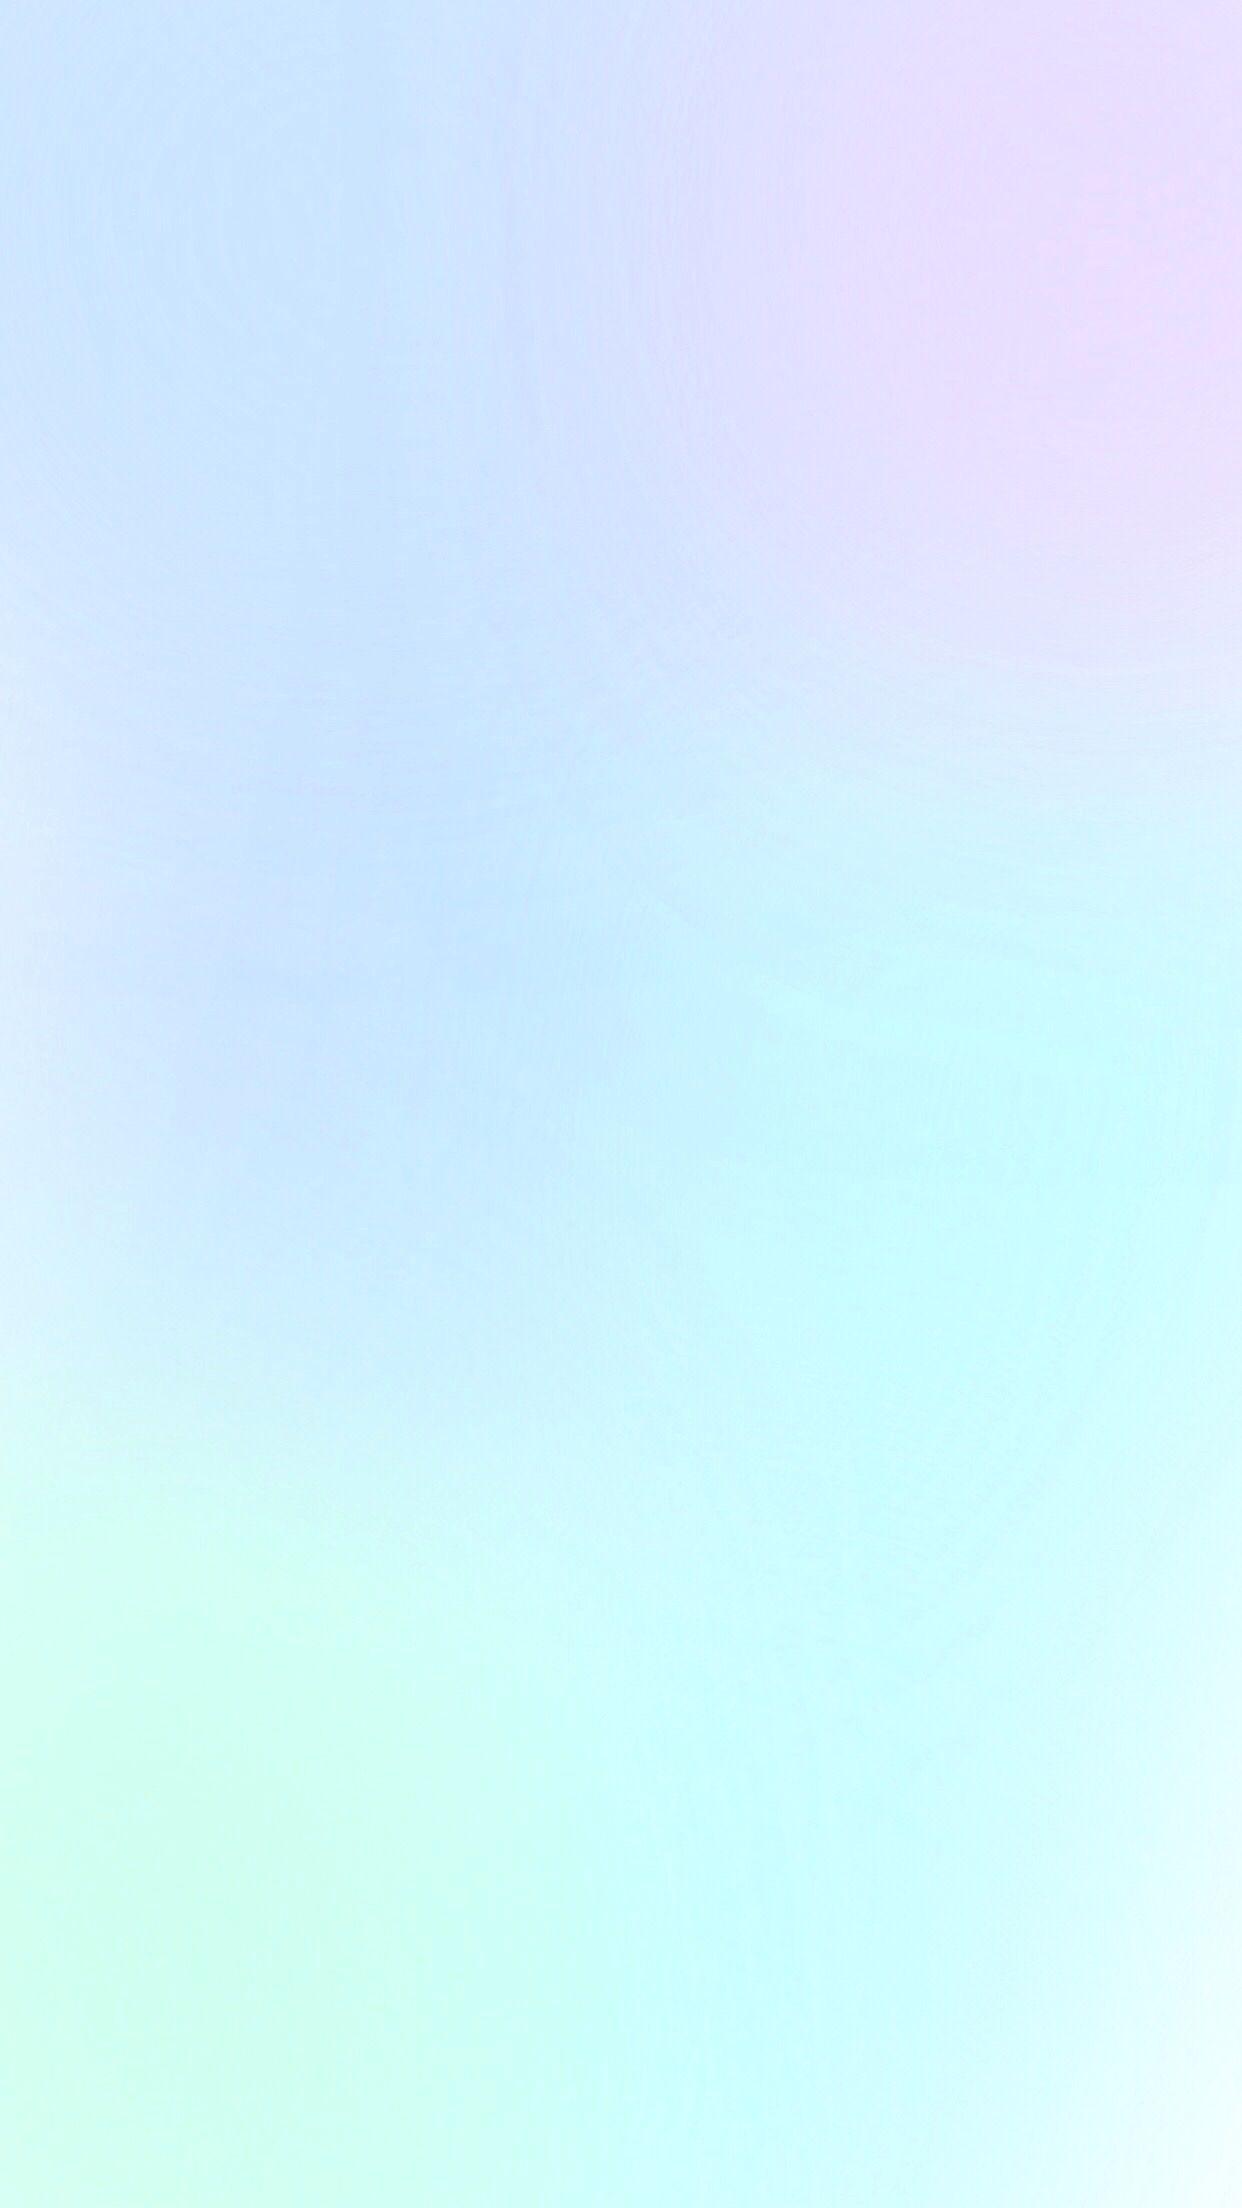 Pastel blue purple mint ombre (gradient) phone wallpaper. Phone